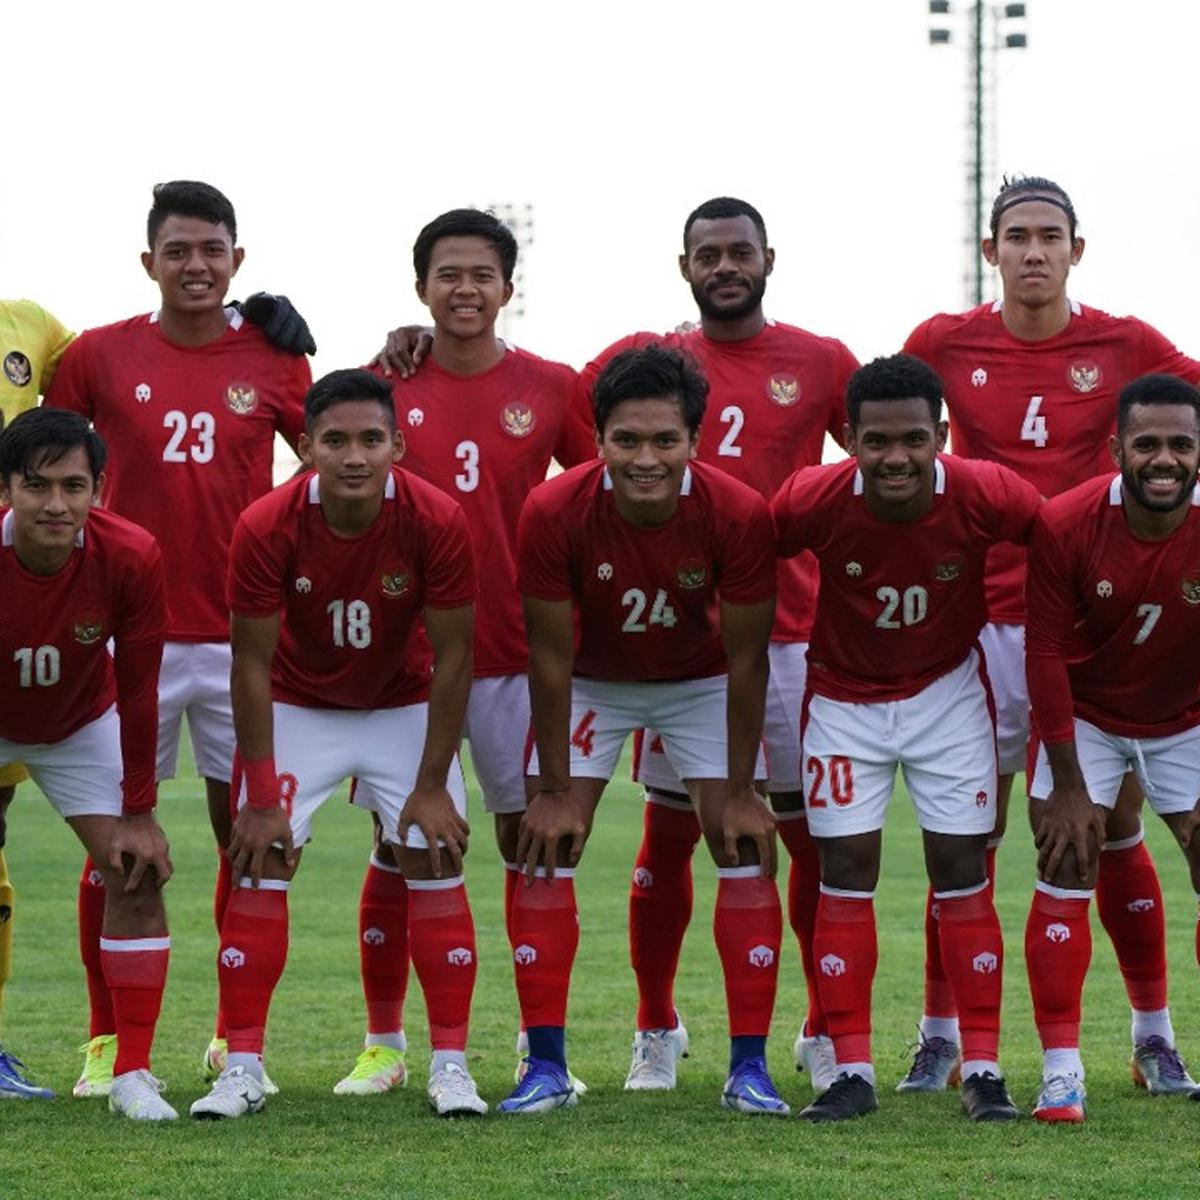 Pasukan bola sepak kebangsaan indonesia